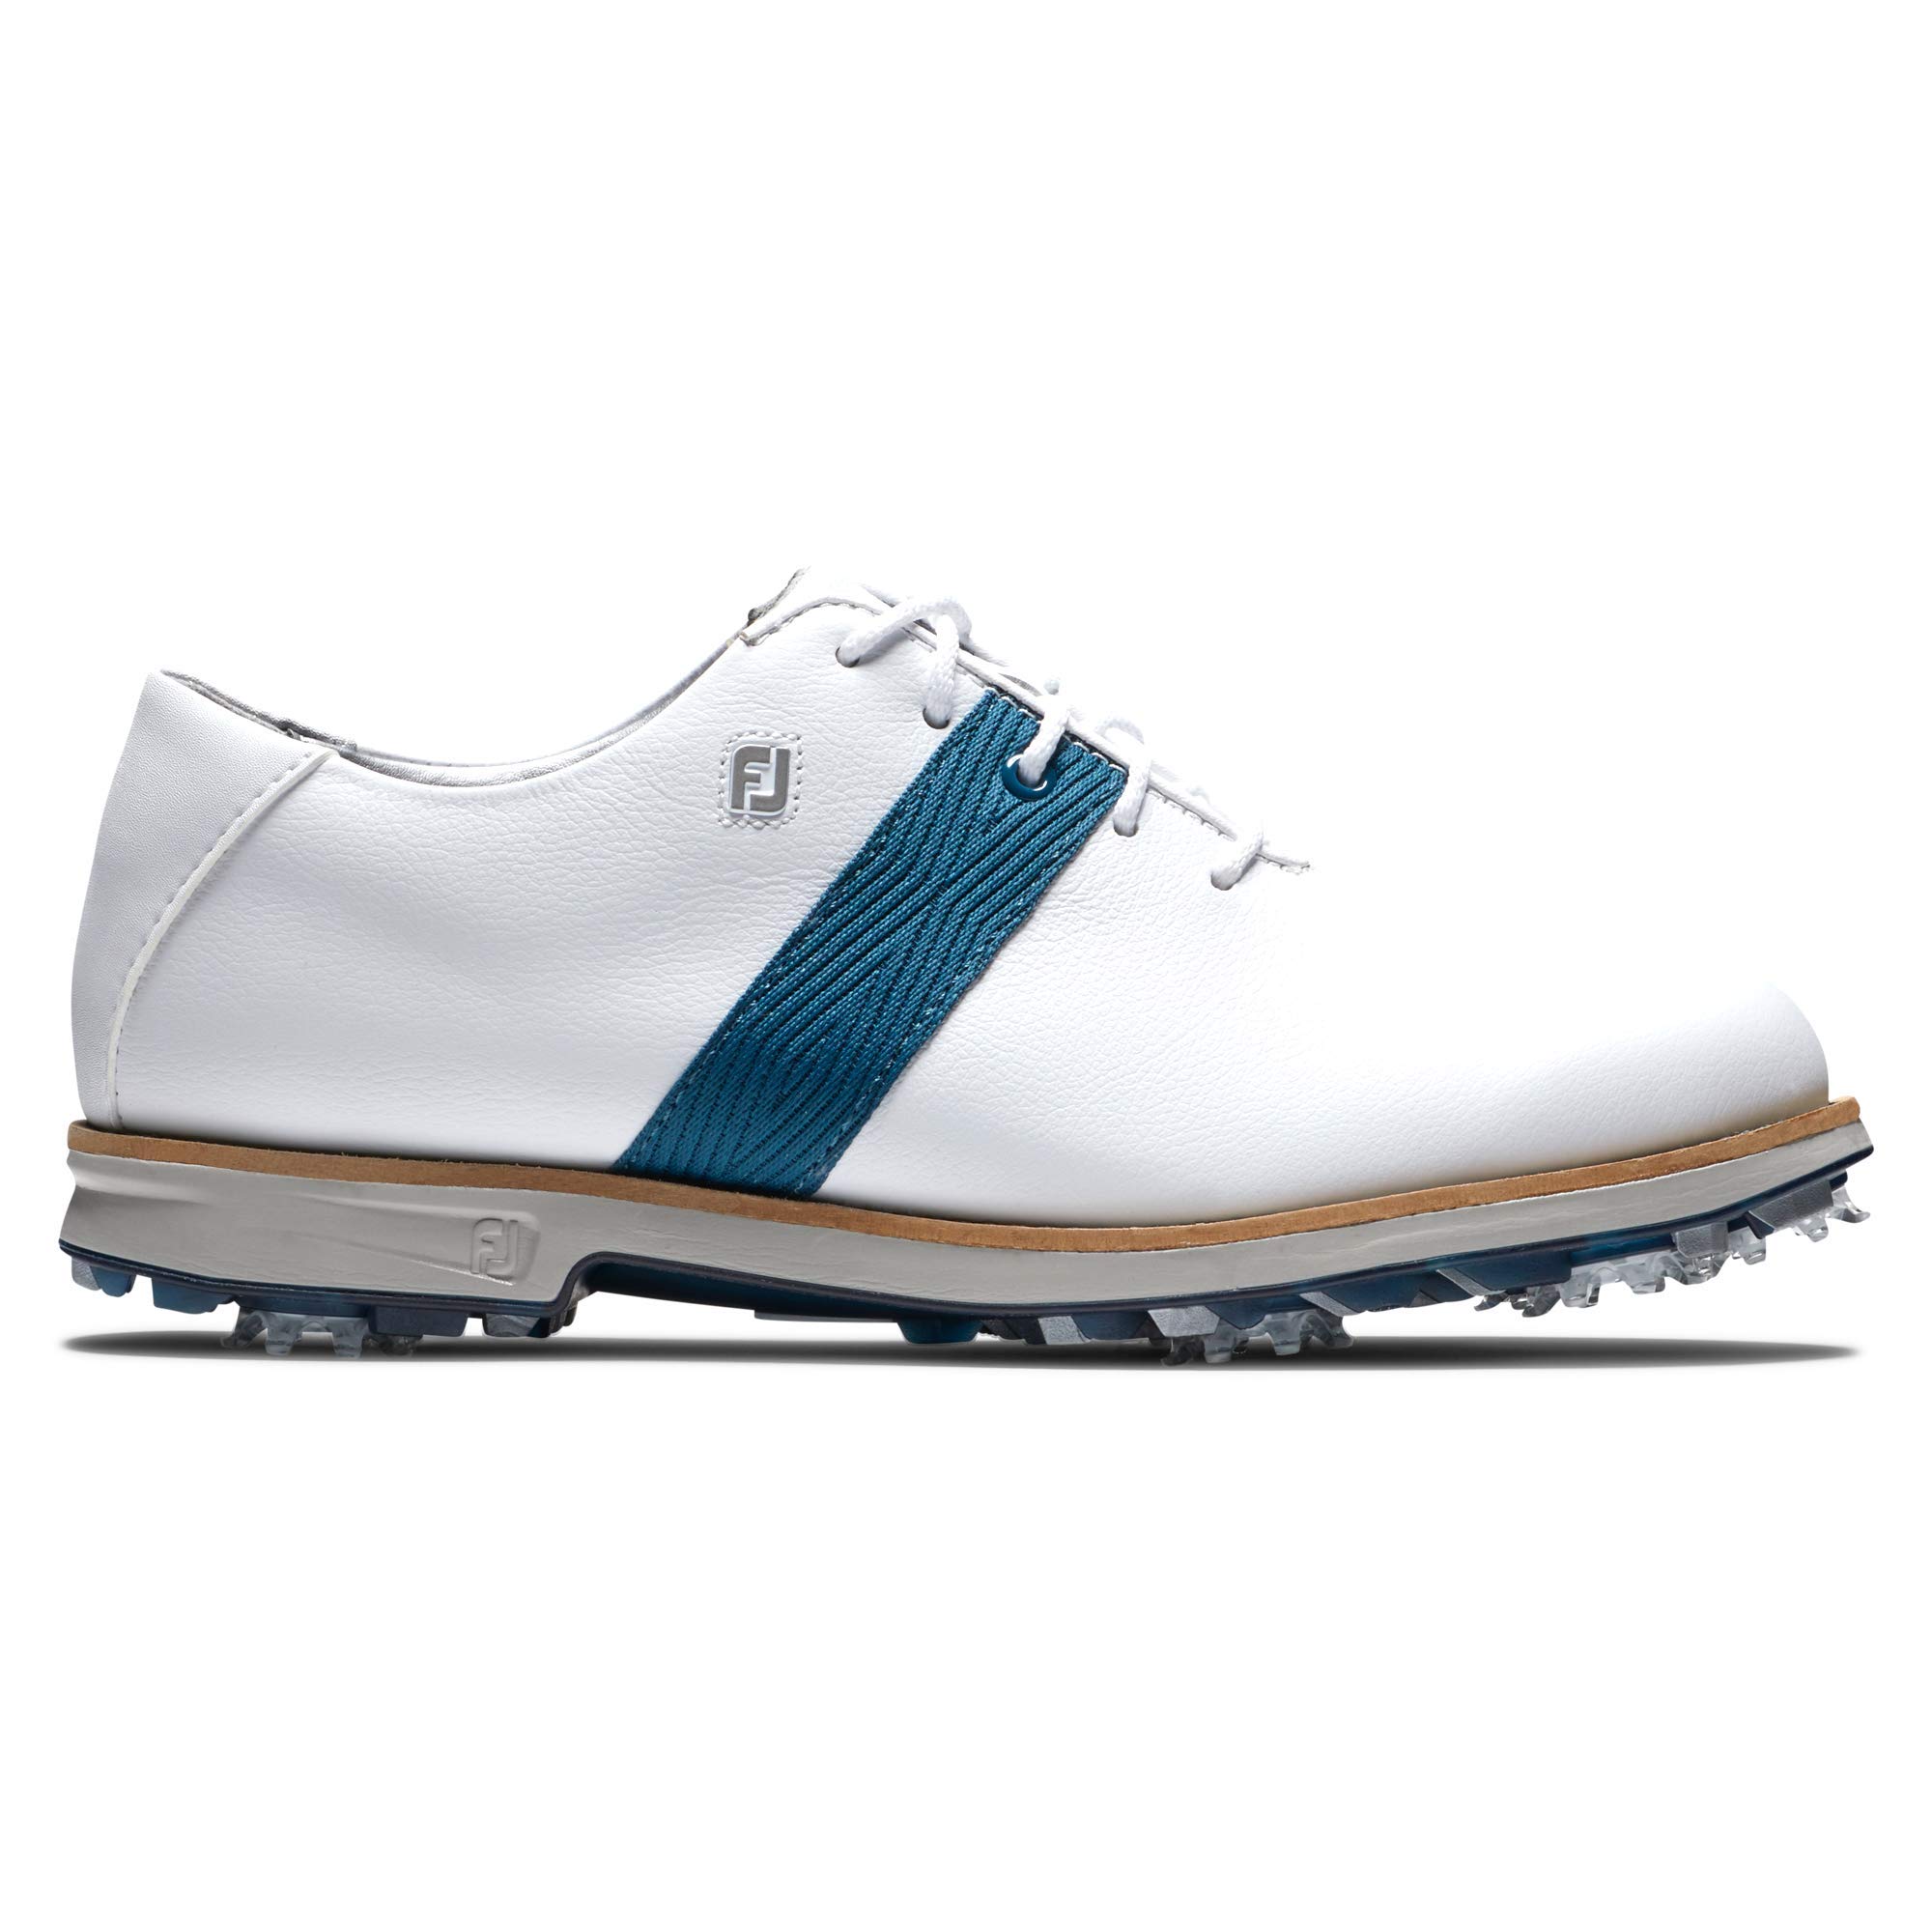 FootJoy Women's Premiere Series Previous Season Style Golf Shoe, White/Blue, 7